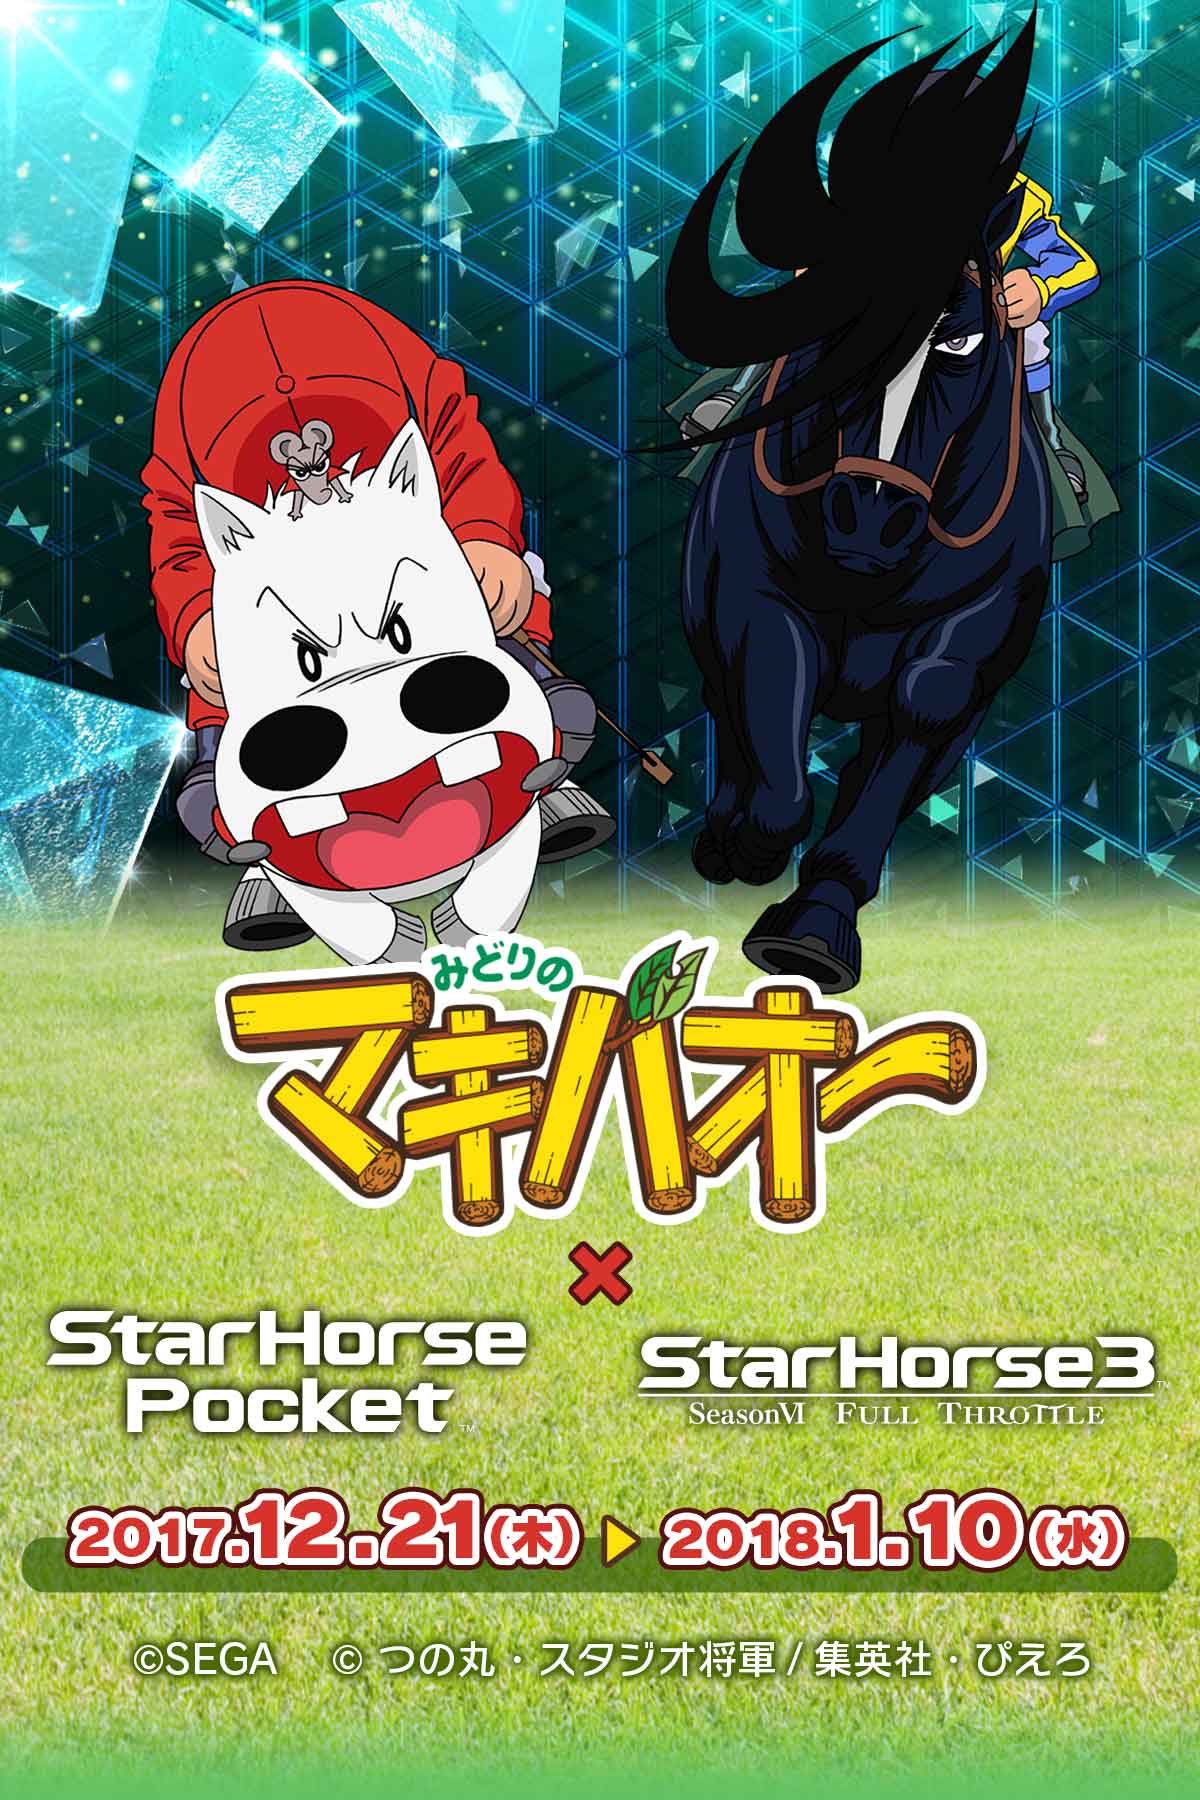 みどりのマキバオー Starhorseシリーズコラボキャンペーン